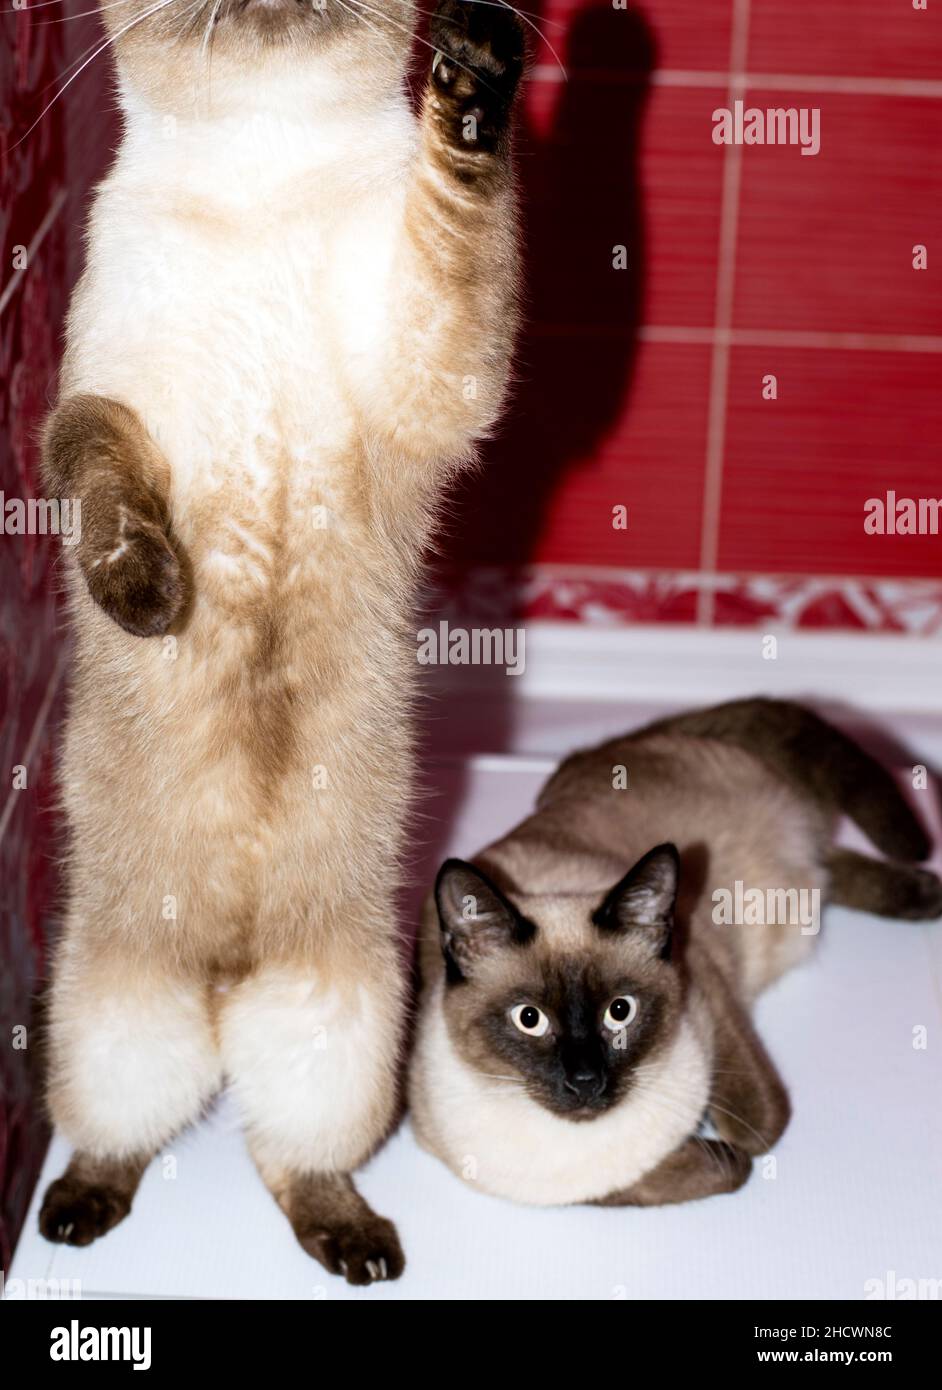 Coppia di Siamese-Tailandese gatto e gatto seduto in un bagno rosso, gatti, gattini e gatti in casa, animali domestici le loro foto e la loro vita Foto Stock